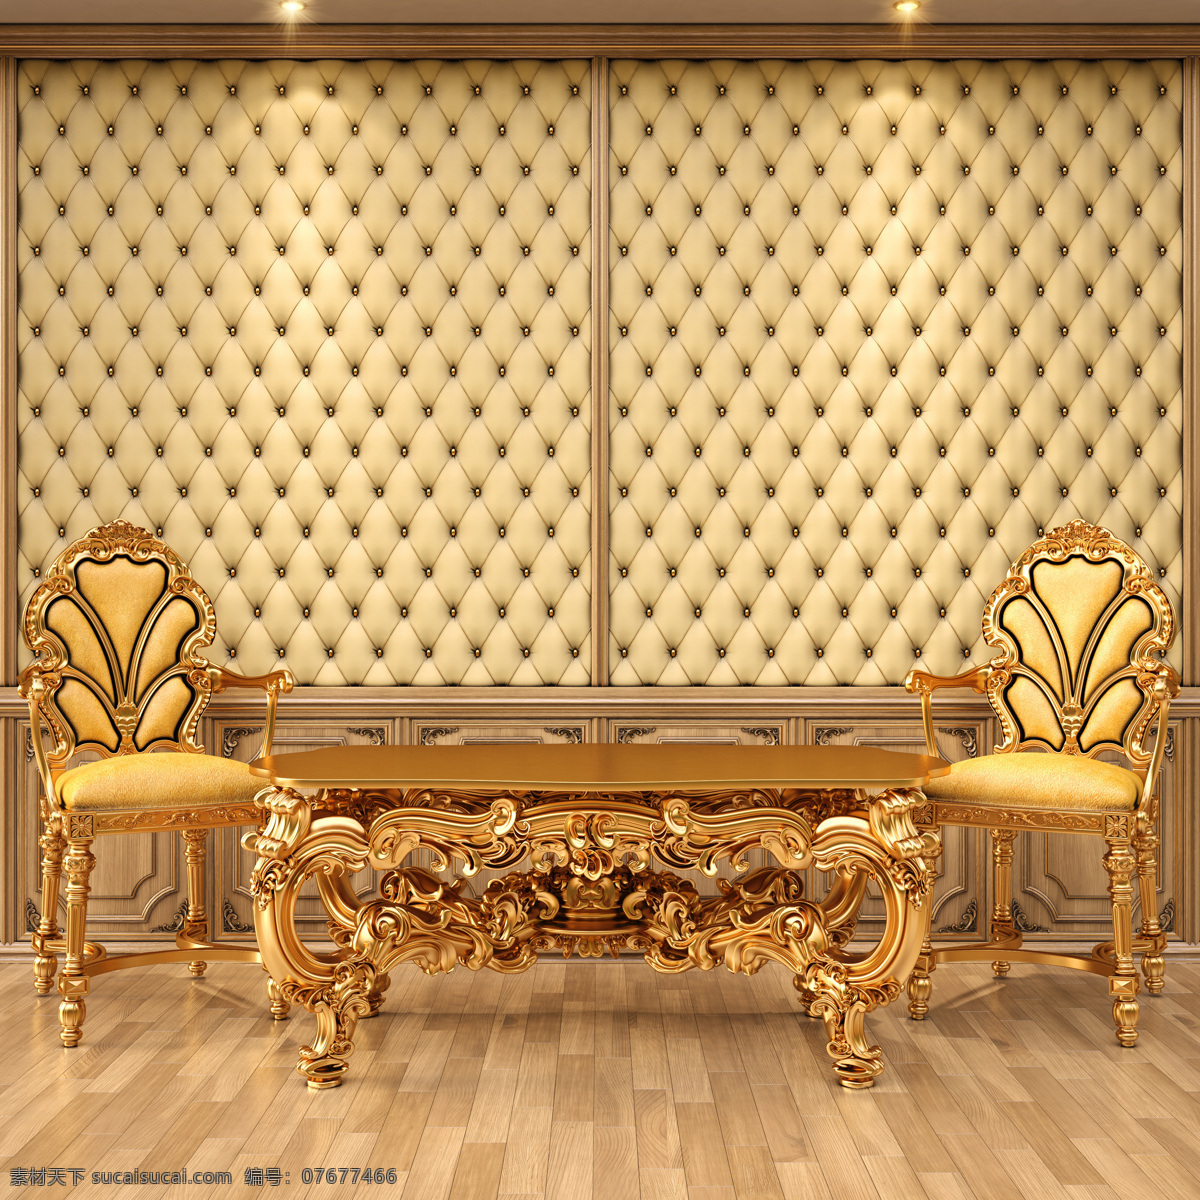 室内设计 效果图 沙发 桌子 椅子 地板 效果图设计 房地产 装修装饰 环境家居 黄色